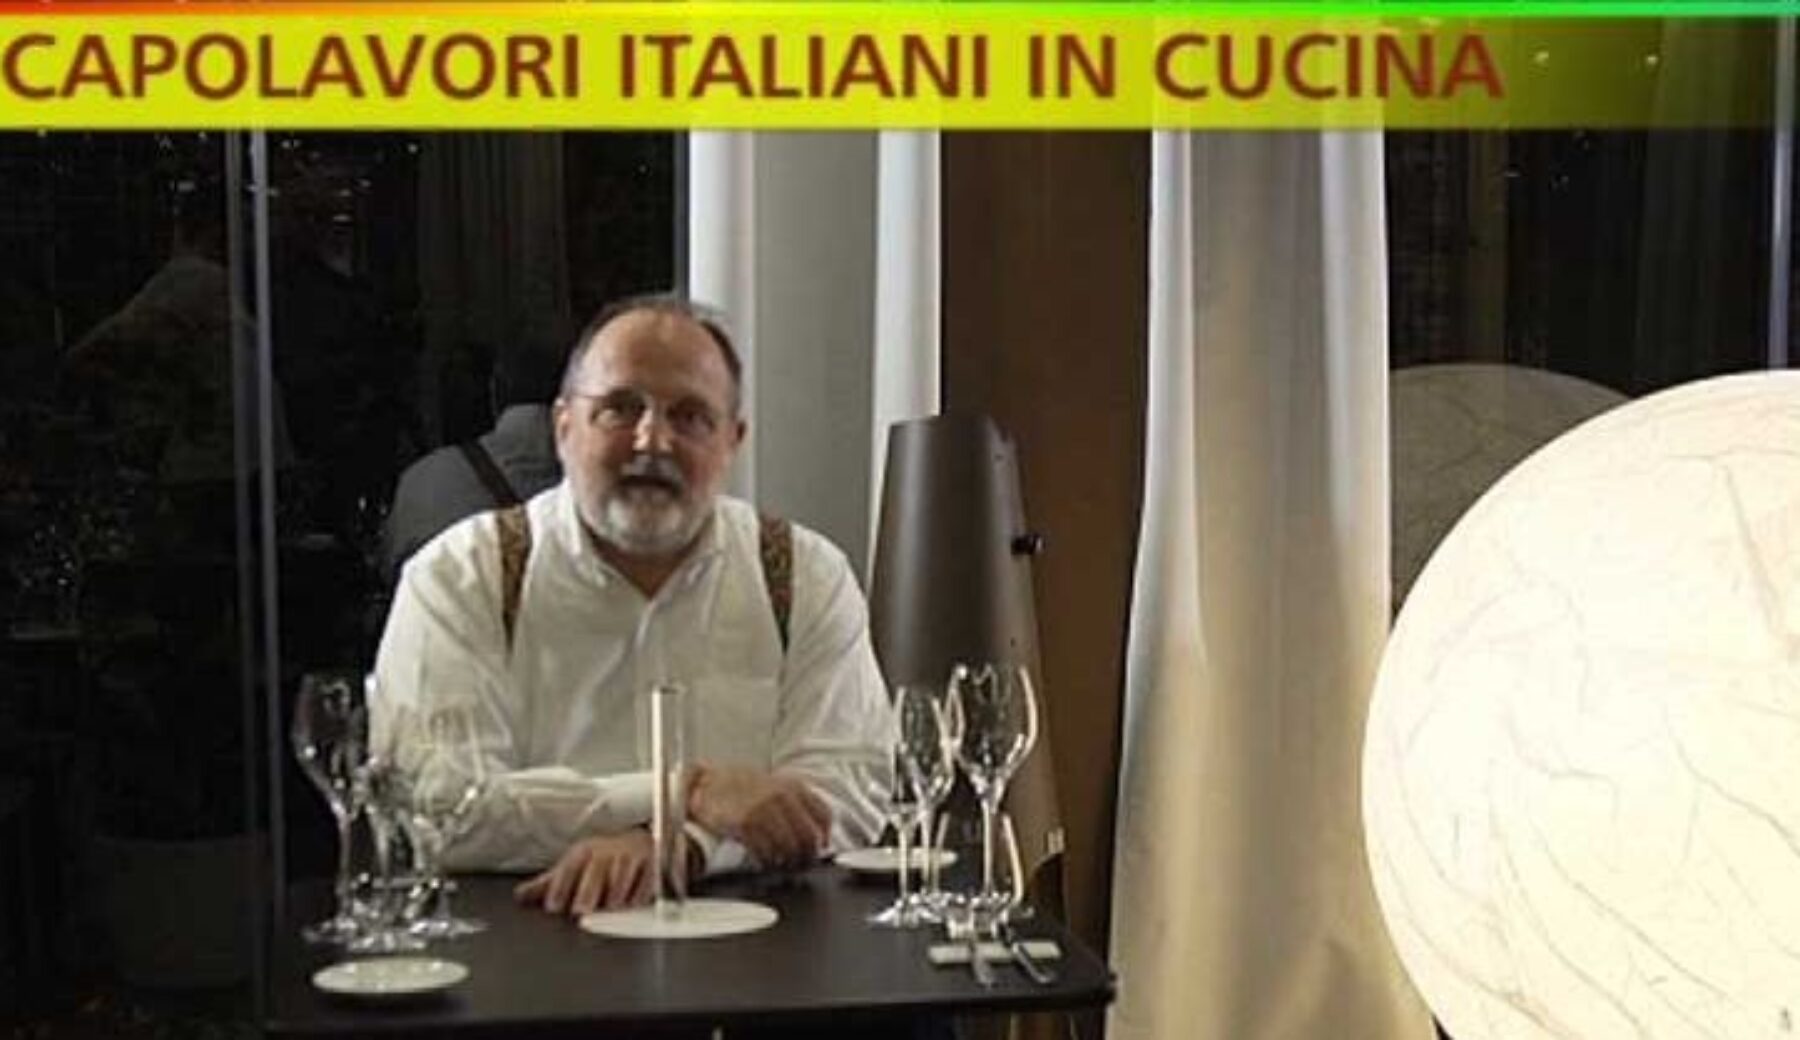 Stasera a Striscia al via la nuova rubrica “Capolavori italiani in cucina”